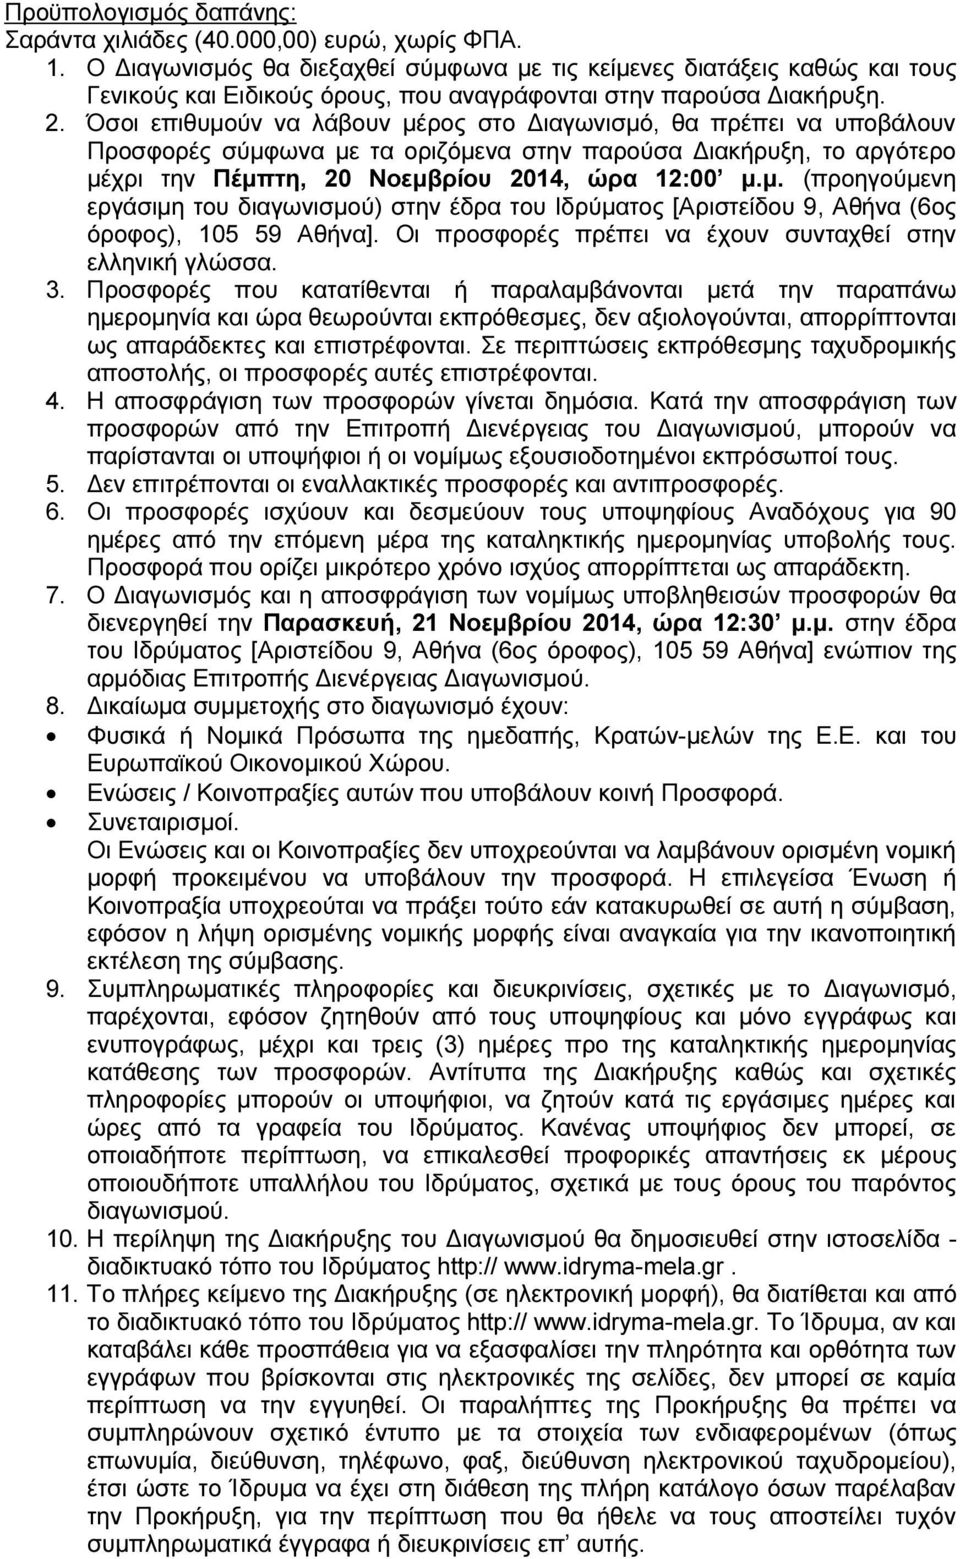 Όσοι επιθυμούν να λάβουν μέρος στο Διαγωνισμό, θα πρέπει να υποβάλουν Προσφορές σύμφωνα με τα οριζόμενα στην παρούσα Διακήρυξη, το αργότερο μέχρι την Πέμπτη, 20 Νοεμβρίου 2014, ώρα 12:00 μ.μ. (προηγούμενη εργάσιμη του διαγωνισμού) στην έδρα του Ιδρύματος [Αριστείδου 9, Αθήνα (6ος όροφος), 105 59 Αθήνα].